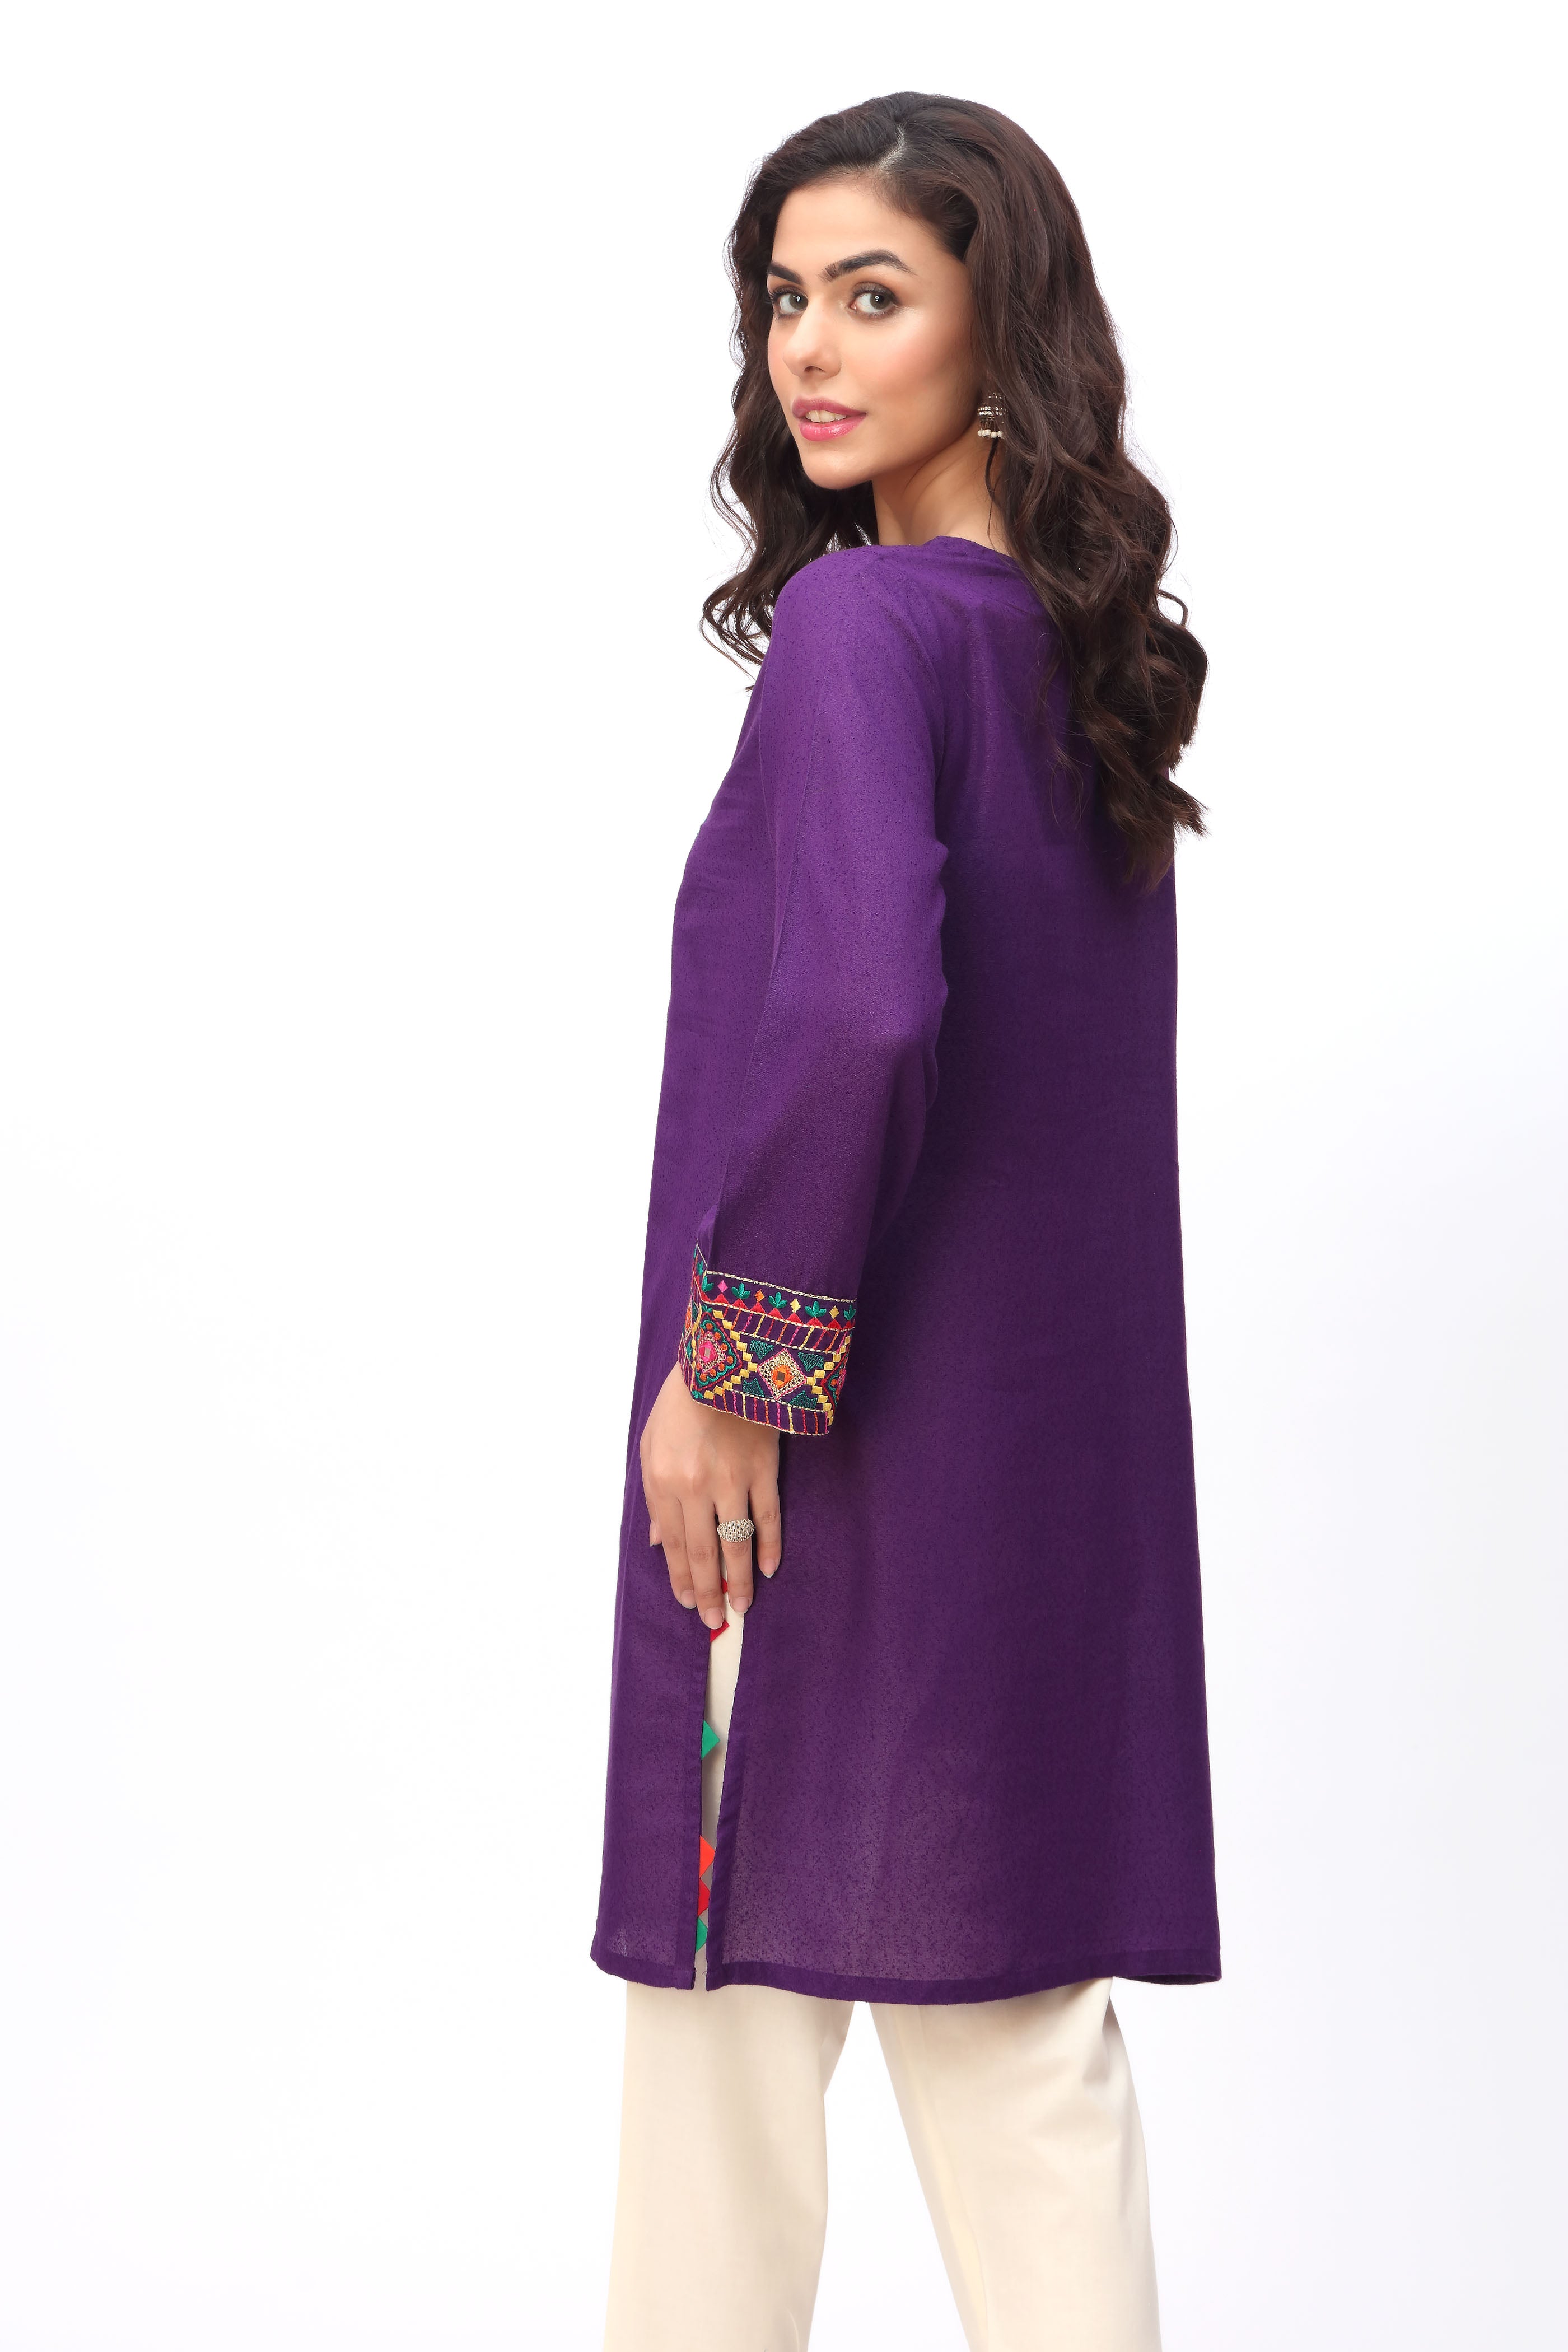 Phool Sheesha 2 in Purple coloured Lawn Karandi fabric 3